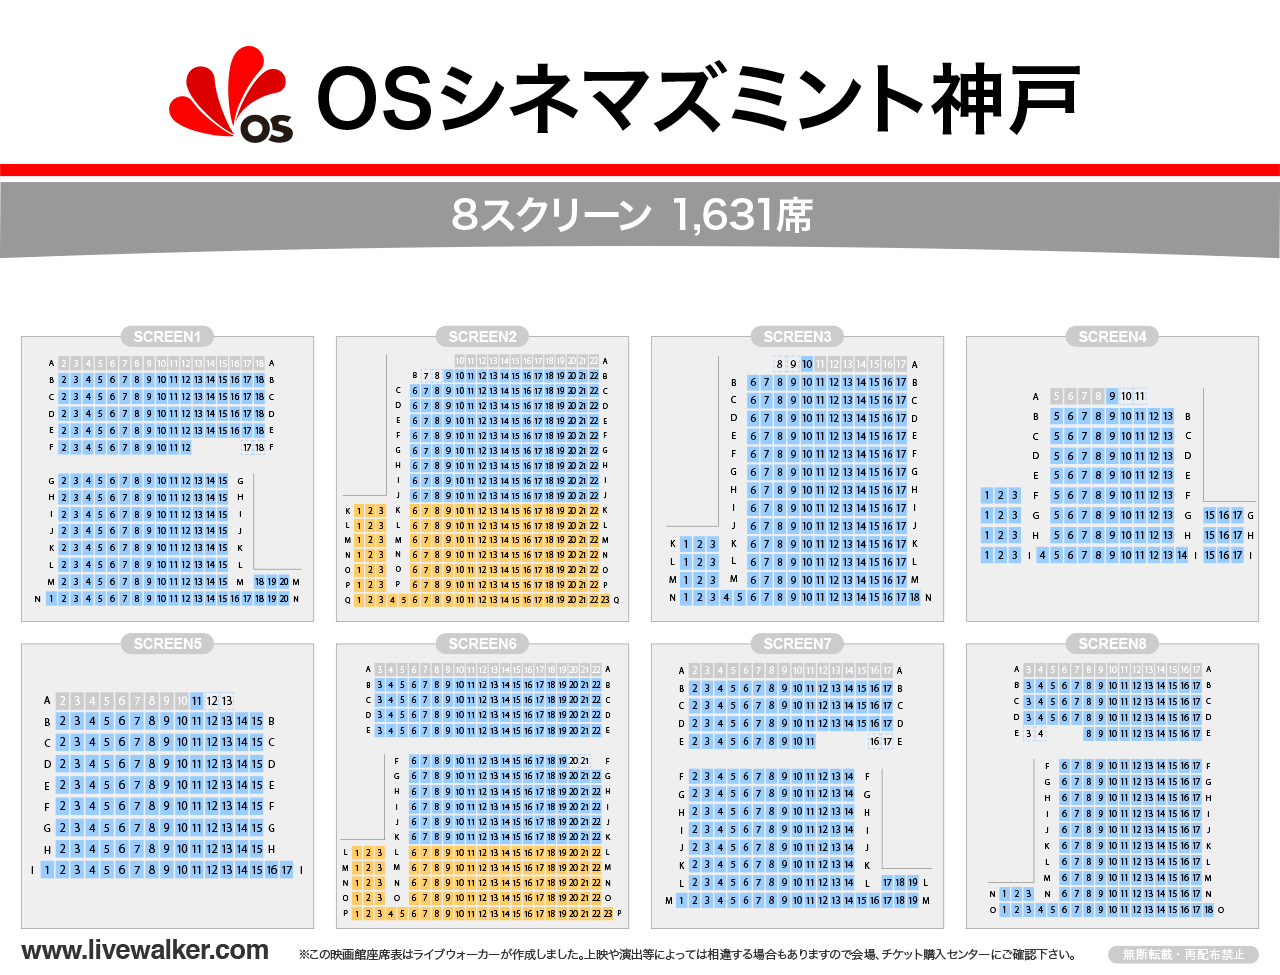 OSシネマズミント神戸スクリーンの座席表